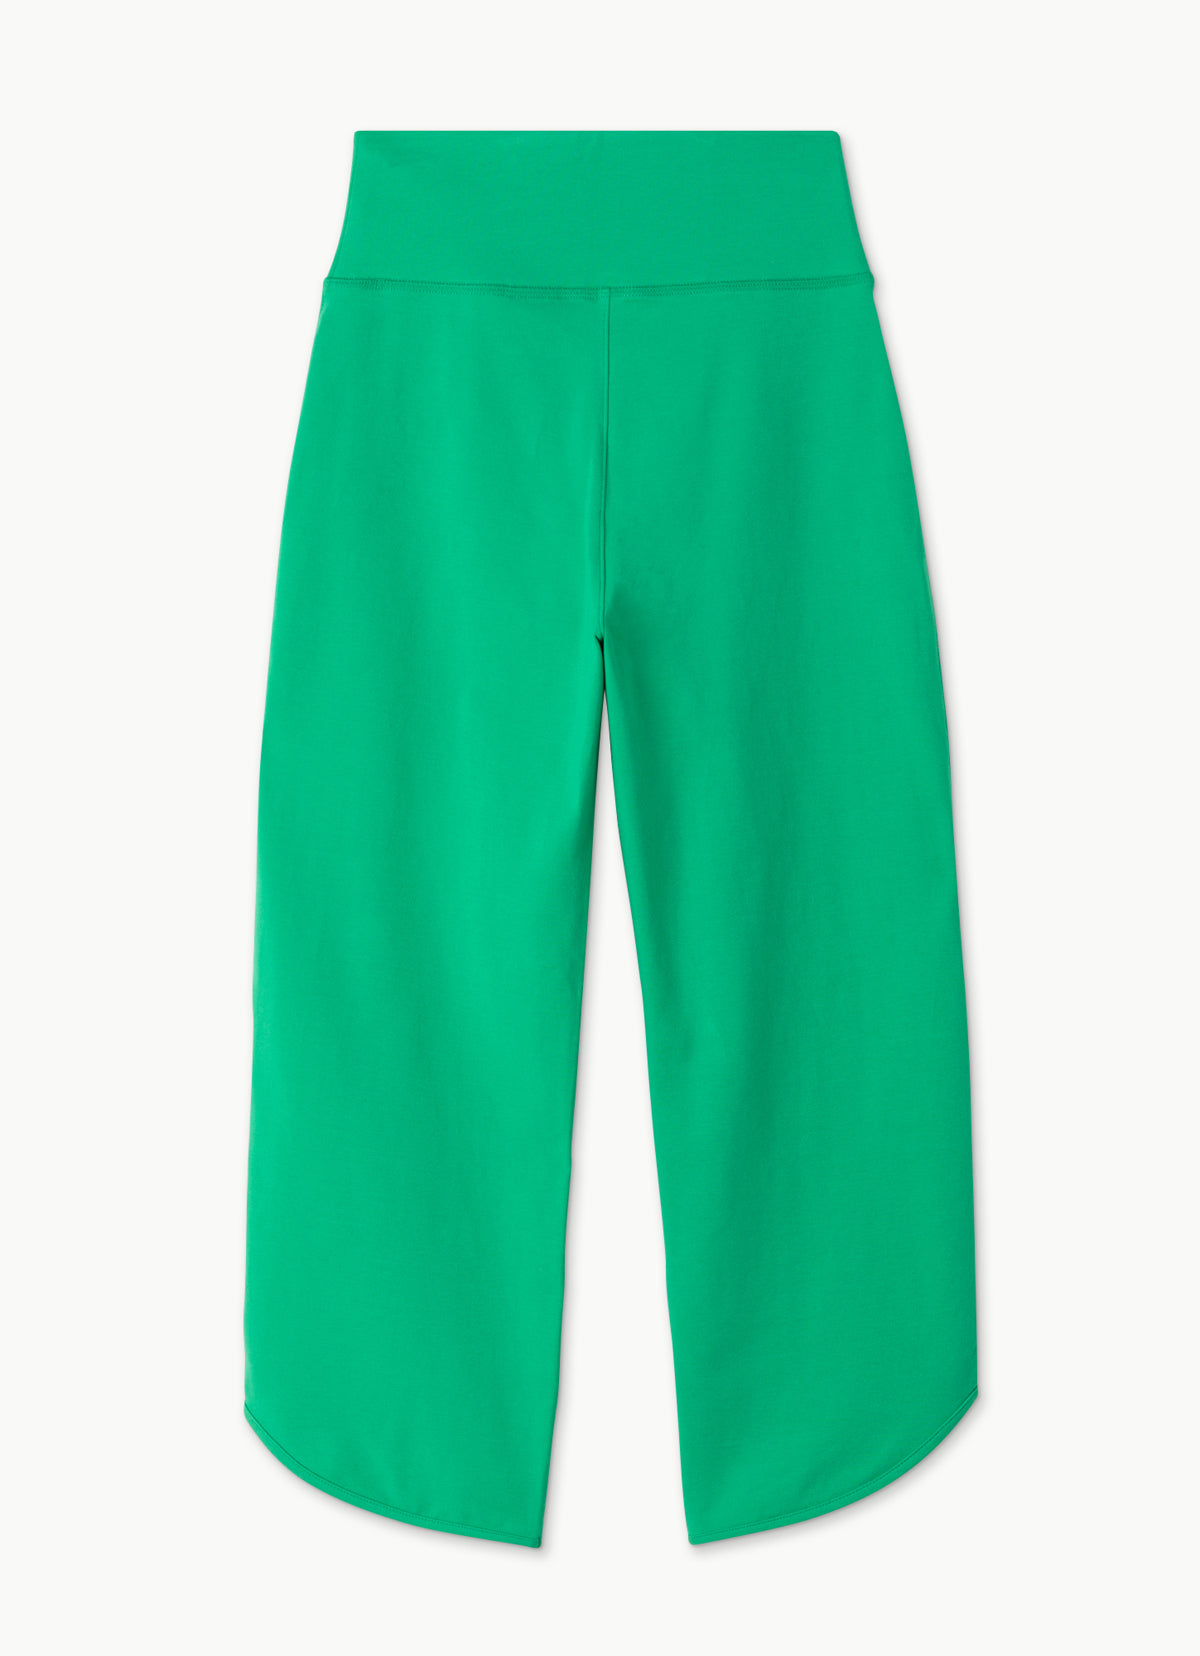 Membagi pants #2_Simply Green